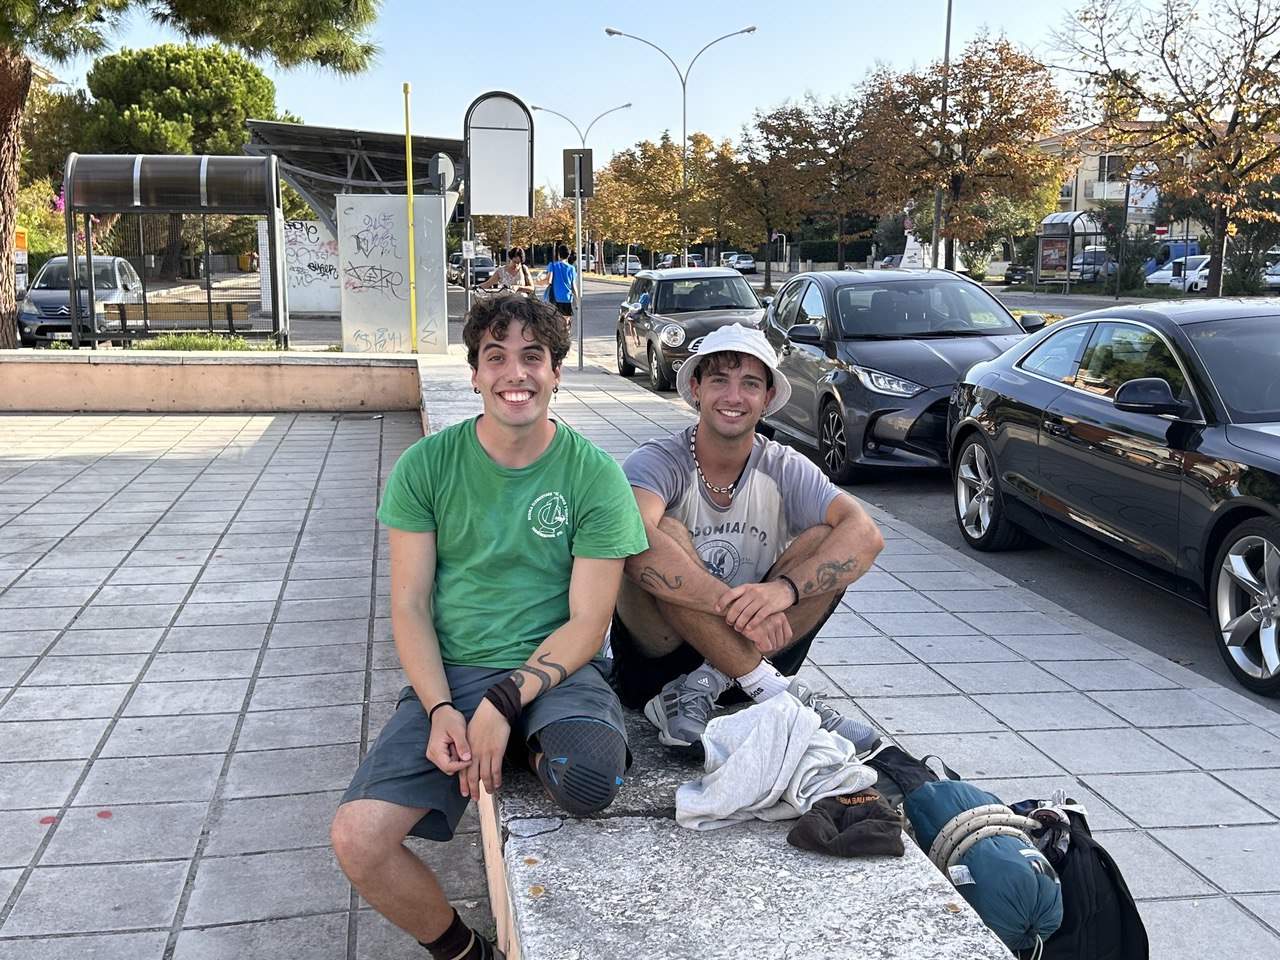 Una camminata e mille avventure: Nico e Davide fanno tappa a San Benedetto